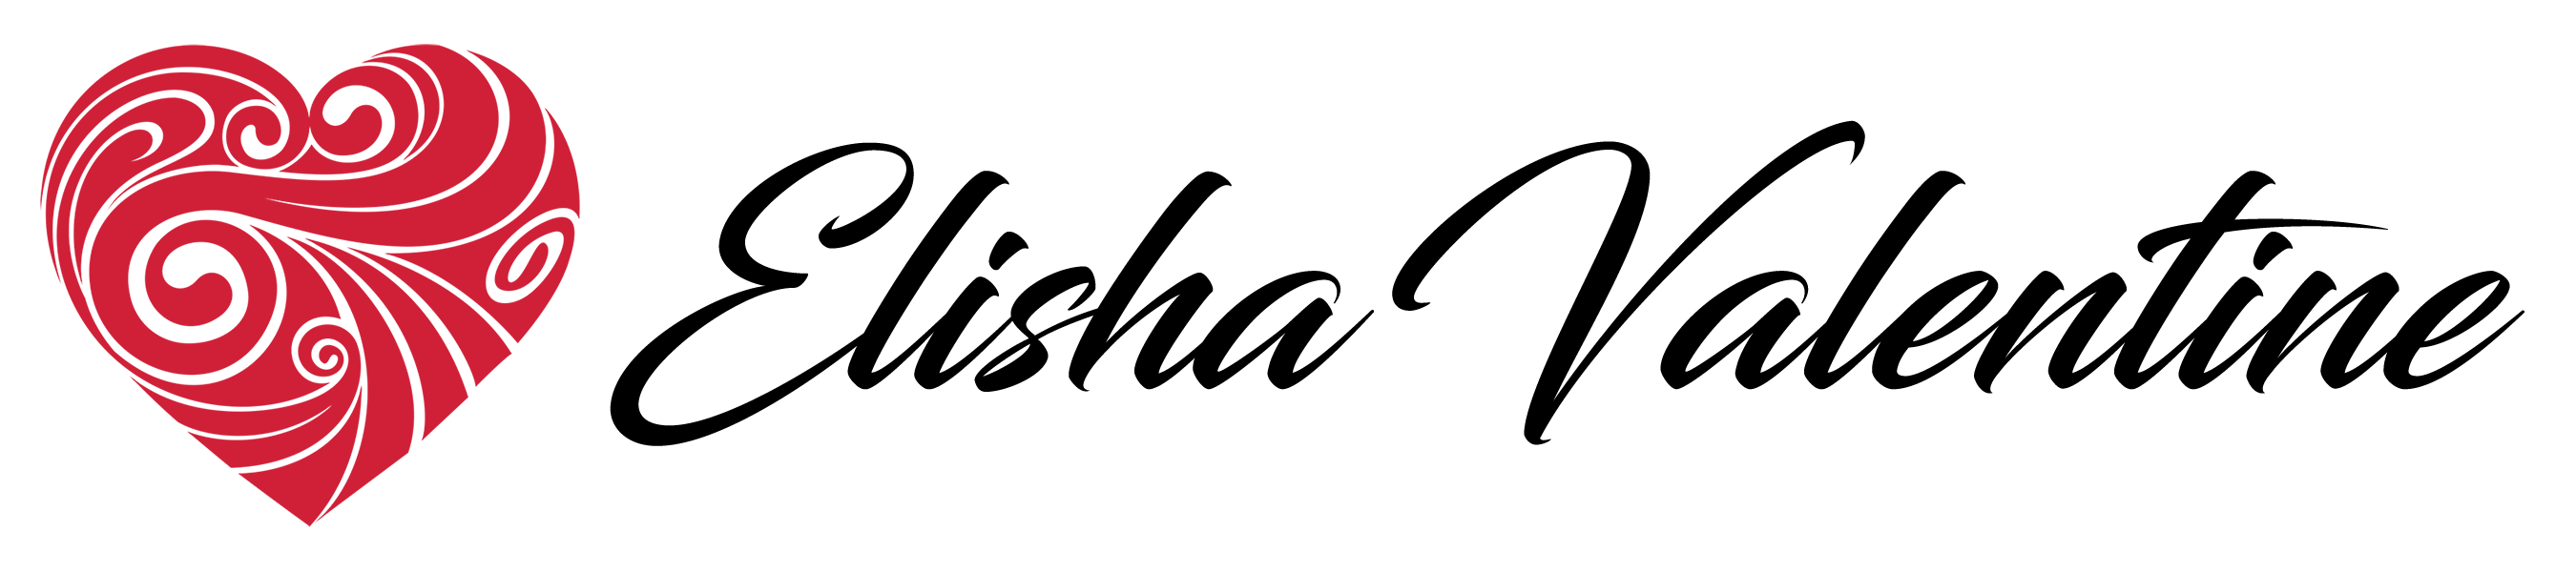 Ev website logo